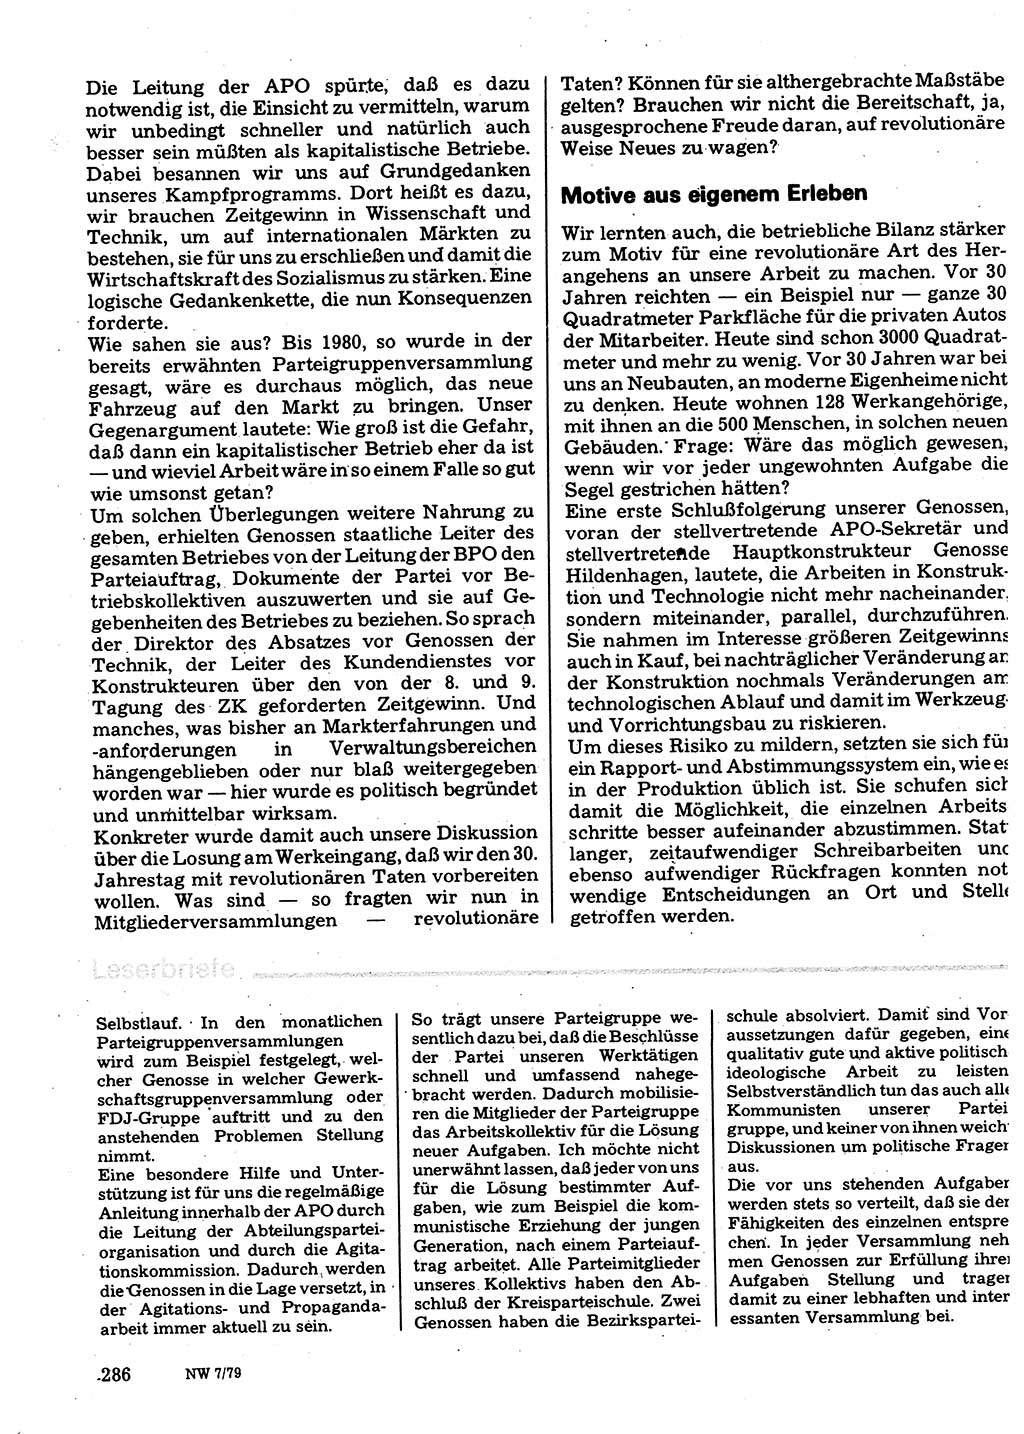 Neuer Weg (NW), Organ des Zentralkomitees (ZK) der SED (Sozialistische Einheitspartei Deutschlands) für Fragen des Parteilebens, 34. Jahrgang [Deutsche Demokratische Republik (DDR)] 1979, Seite 286 (NW ZK SED DDR 1979, S. 286)